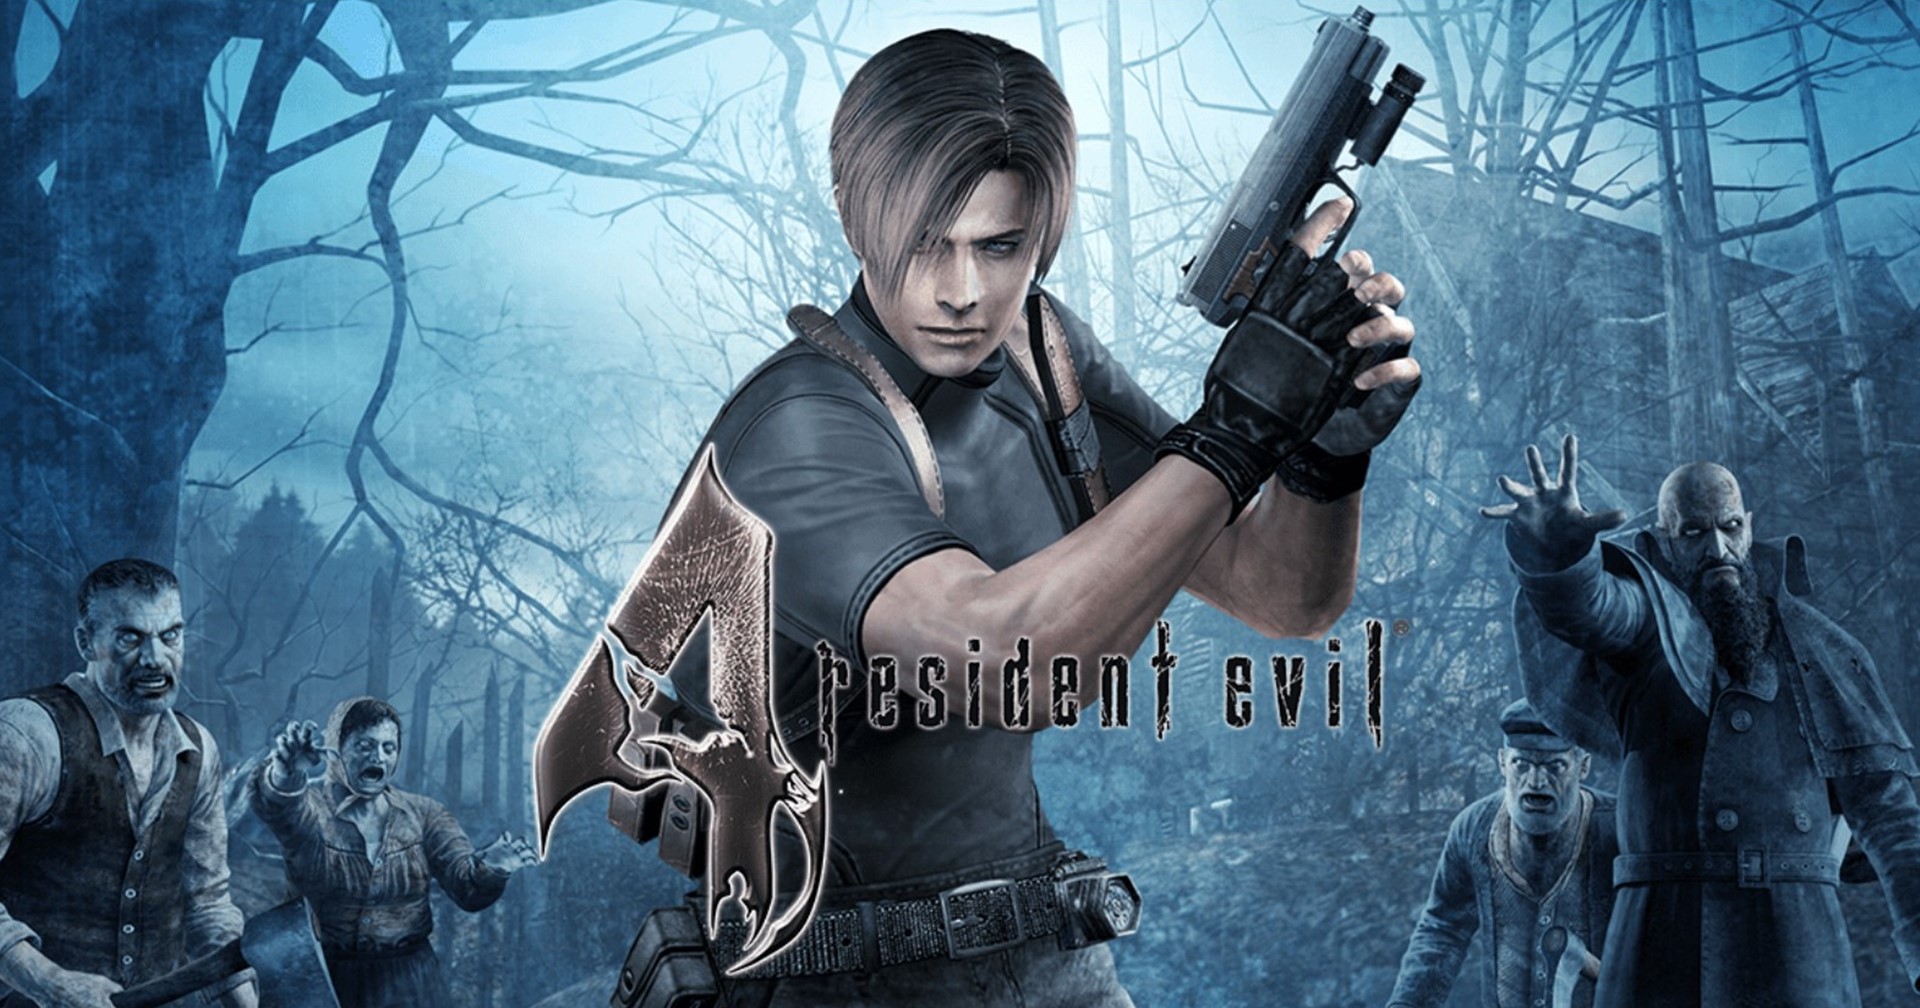 ผูัสร้างเคยลังเลที่จะรีเมก Resident Evil 4 เพราะต้นฉบับทำไว้ดีมาก